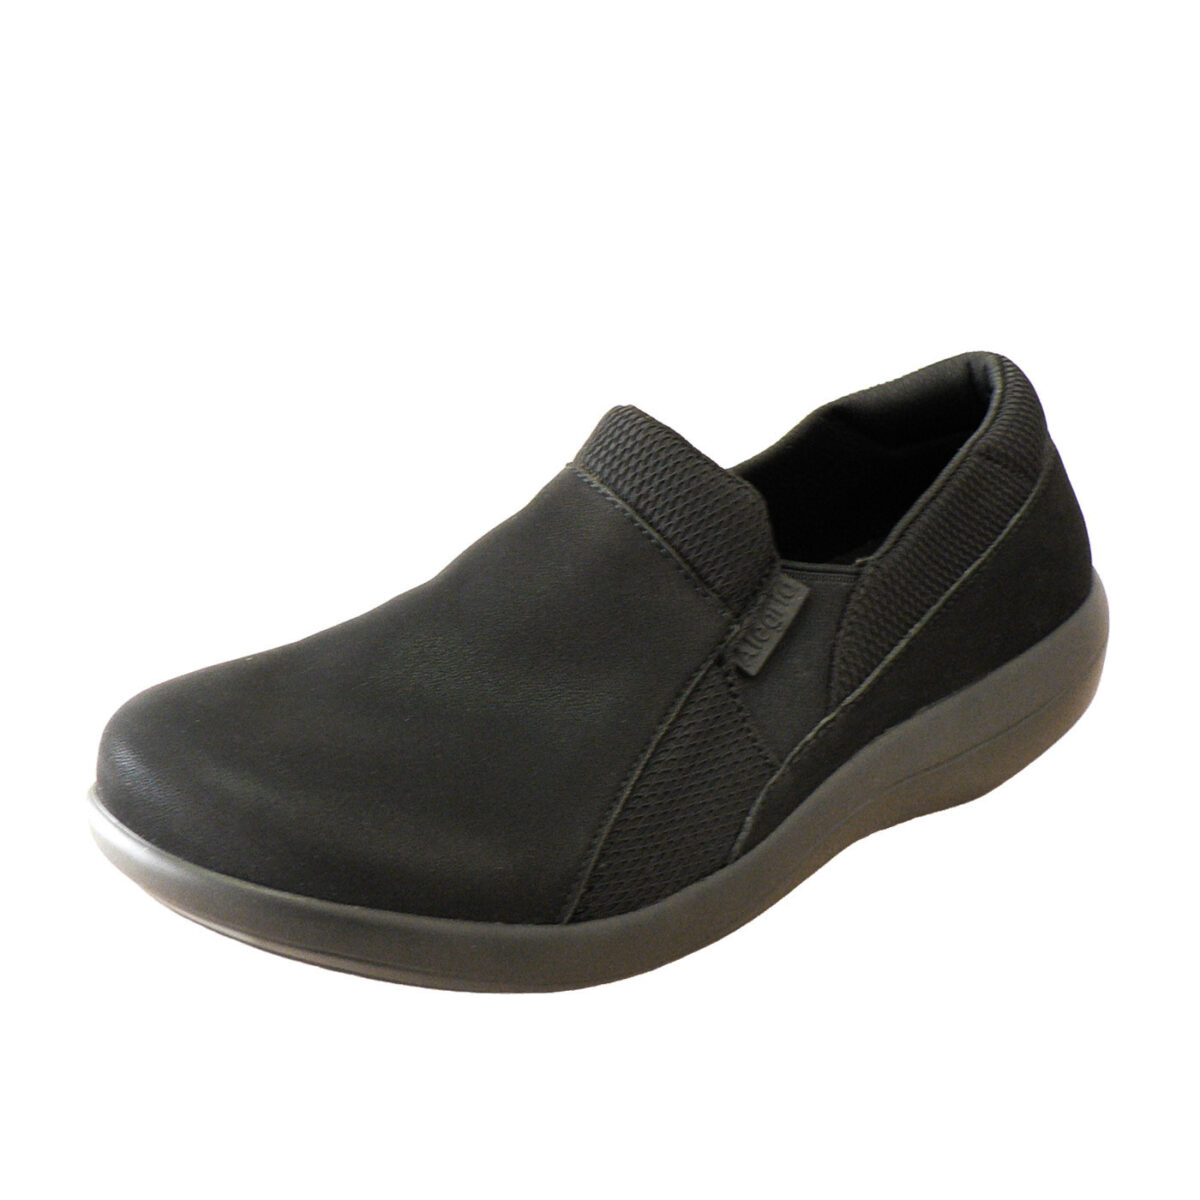 Duette - Black - Nursing Shoe - SUNA Shoes & Accessories